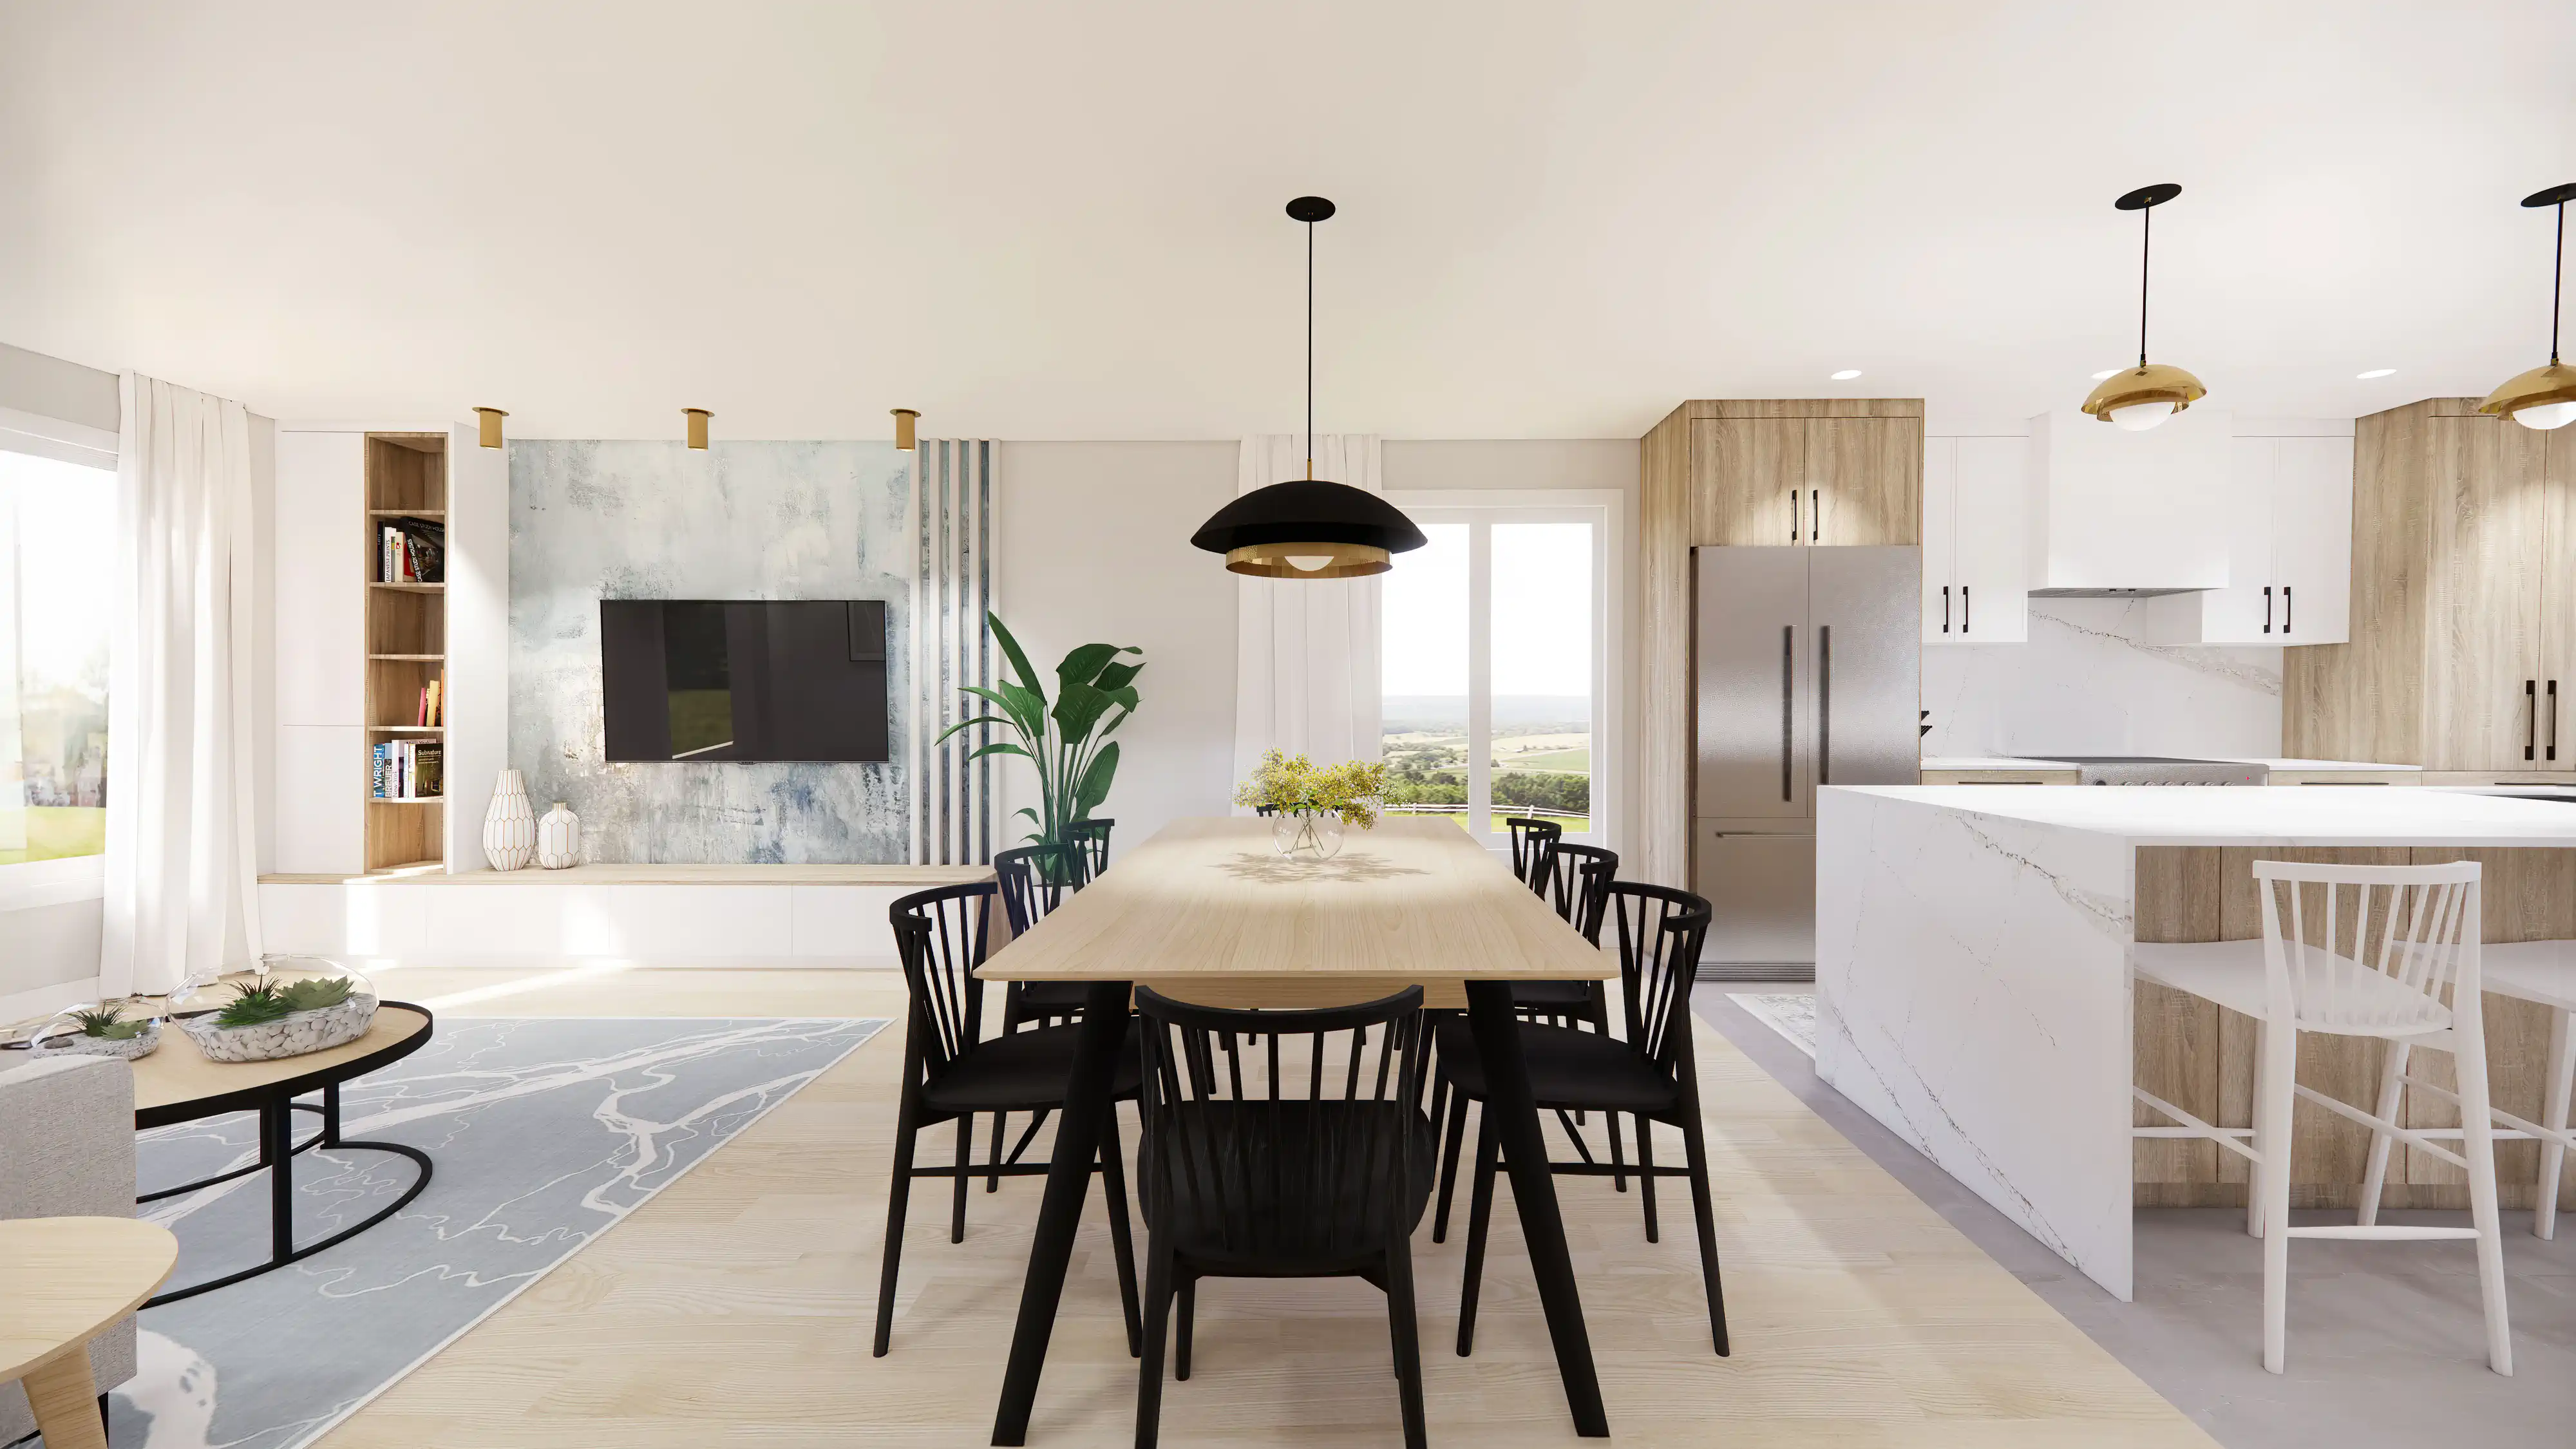 Rendu 3D d'une cuisine moderne avec îlot en marbre, équipements modernes et œuvres d'art encadrées, intérieur signé Sarah Brown Design